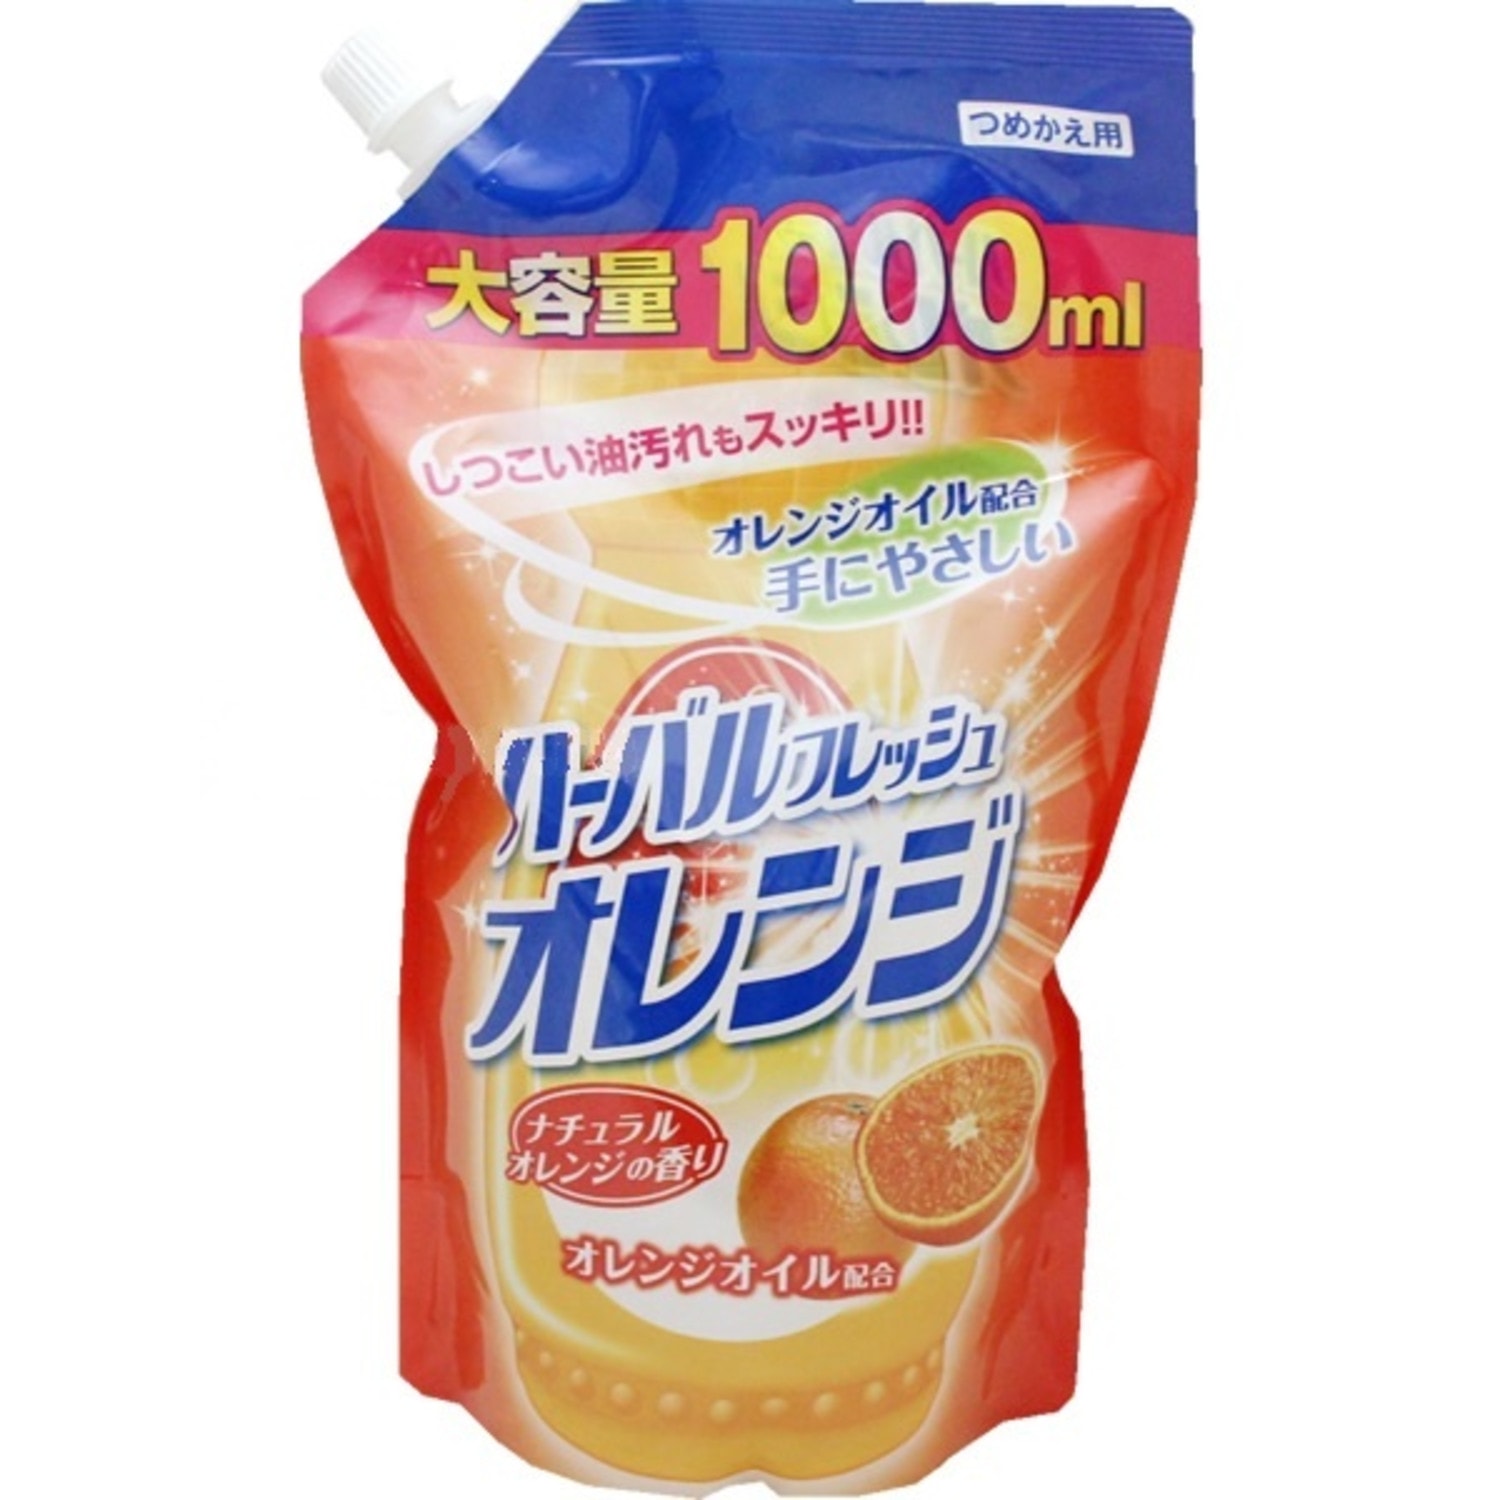 Mitsuei Средство для мытья посуды, овощей и фруктов, аромат апельсина, мягкая упаковка, 1000мл. / 040726